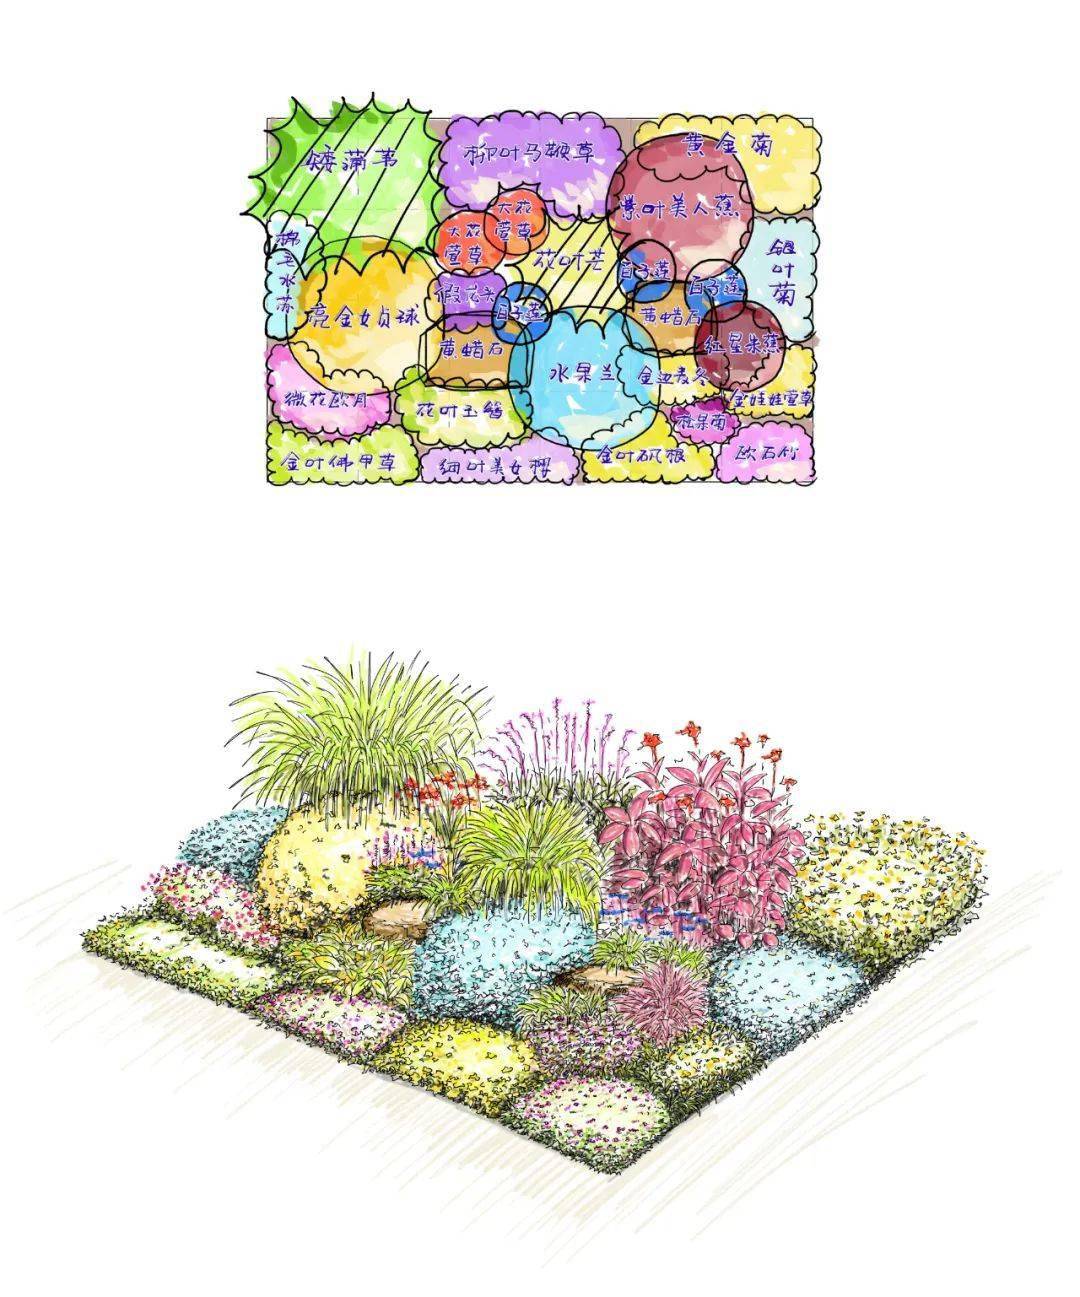 学好花境设计手绘及软件制图技能,做花境方案设计从此